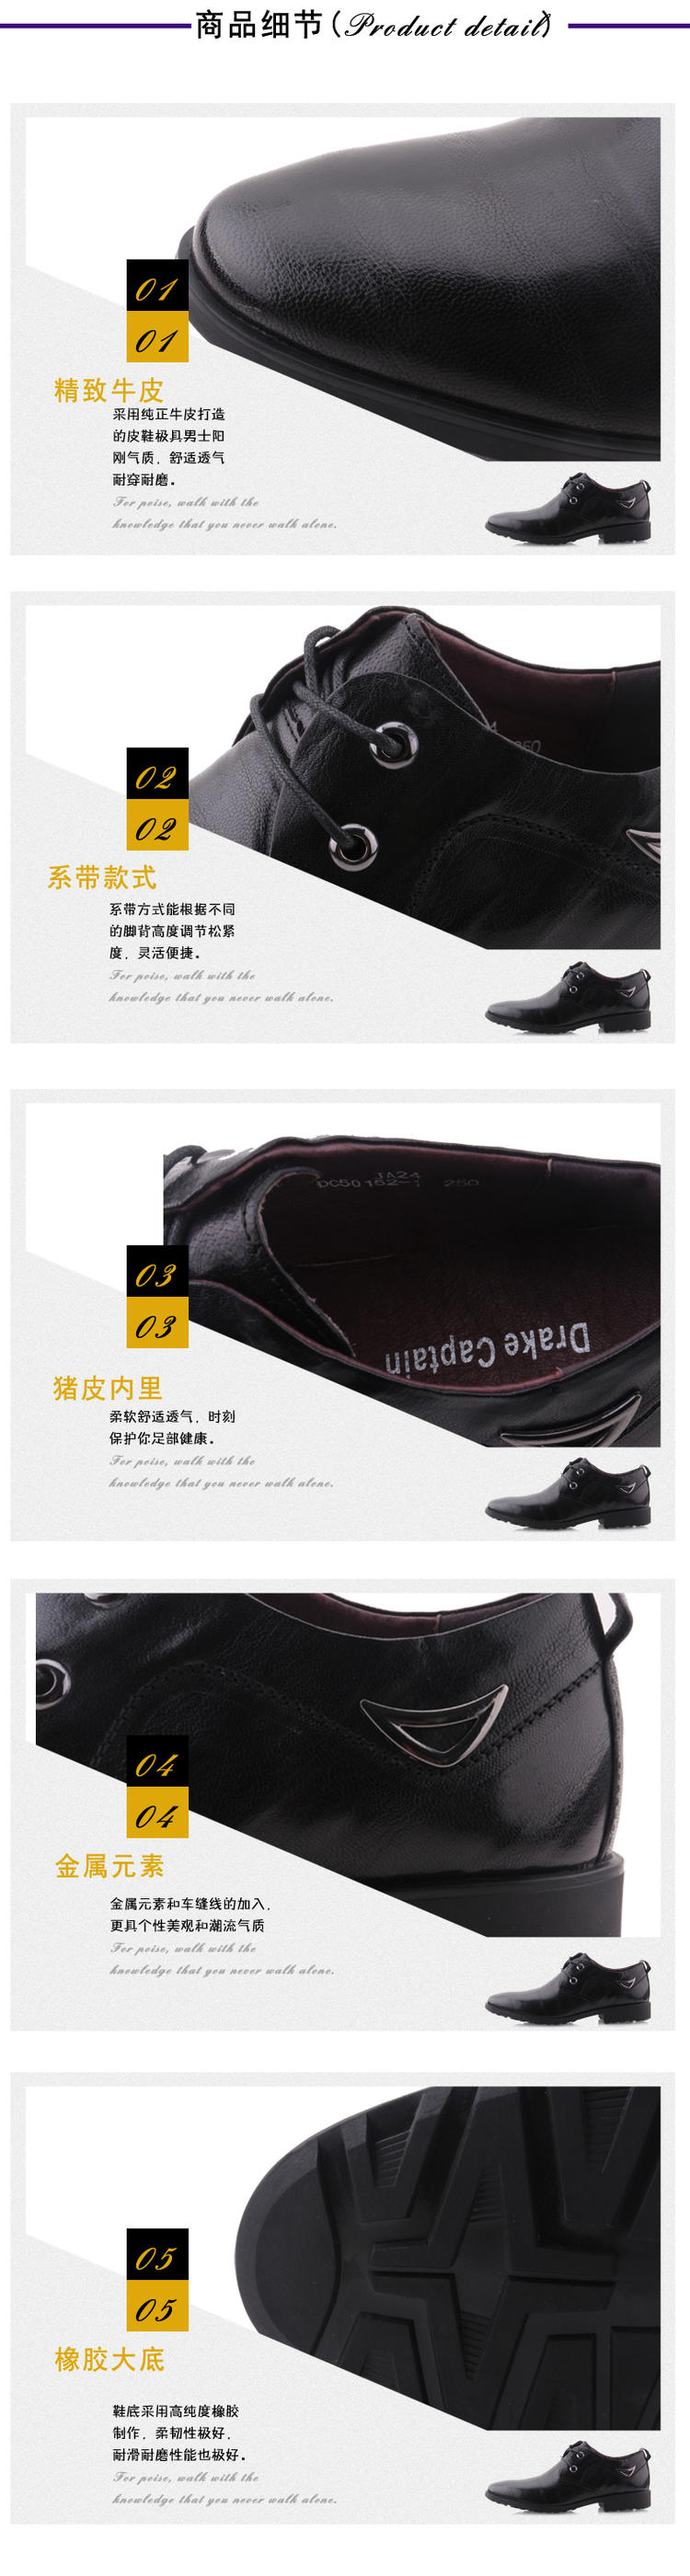 德雷克船长品牌 真皮男鞋 正品尖头商务鞋 舒适日常商务真皮皮鞋50152